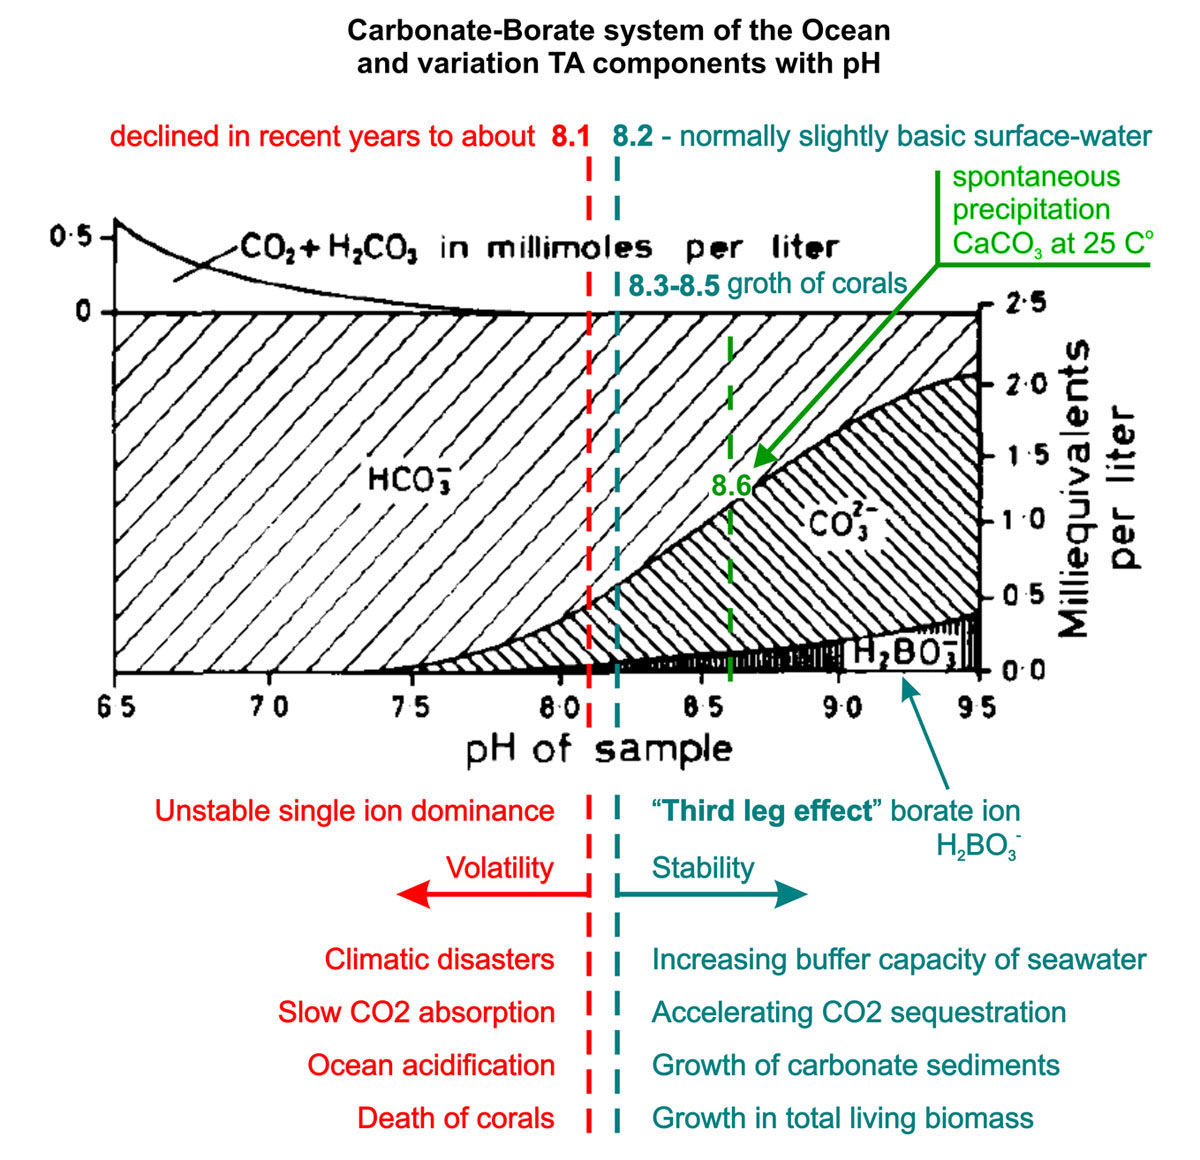  


Carbonat-Borat-system von Ozean und variation TA Komponenten mit dem pH-Wert.
'Dritter Beineffekt ' von borat-Ionen. SALTCOM.ORG

